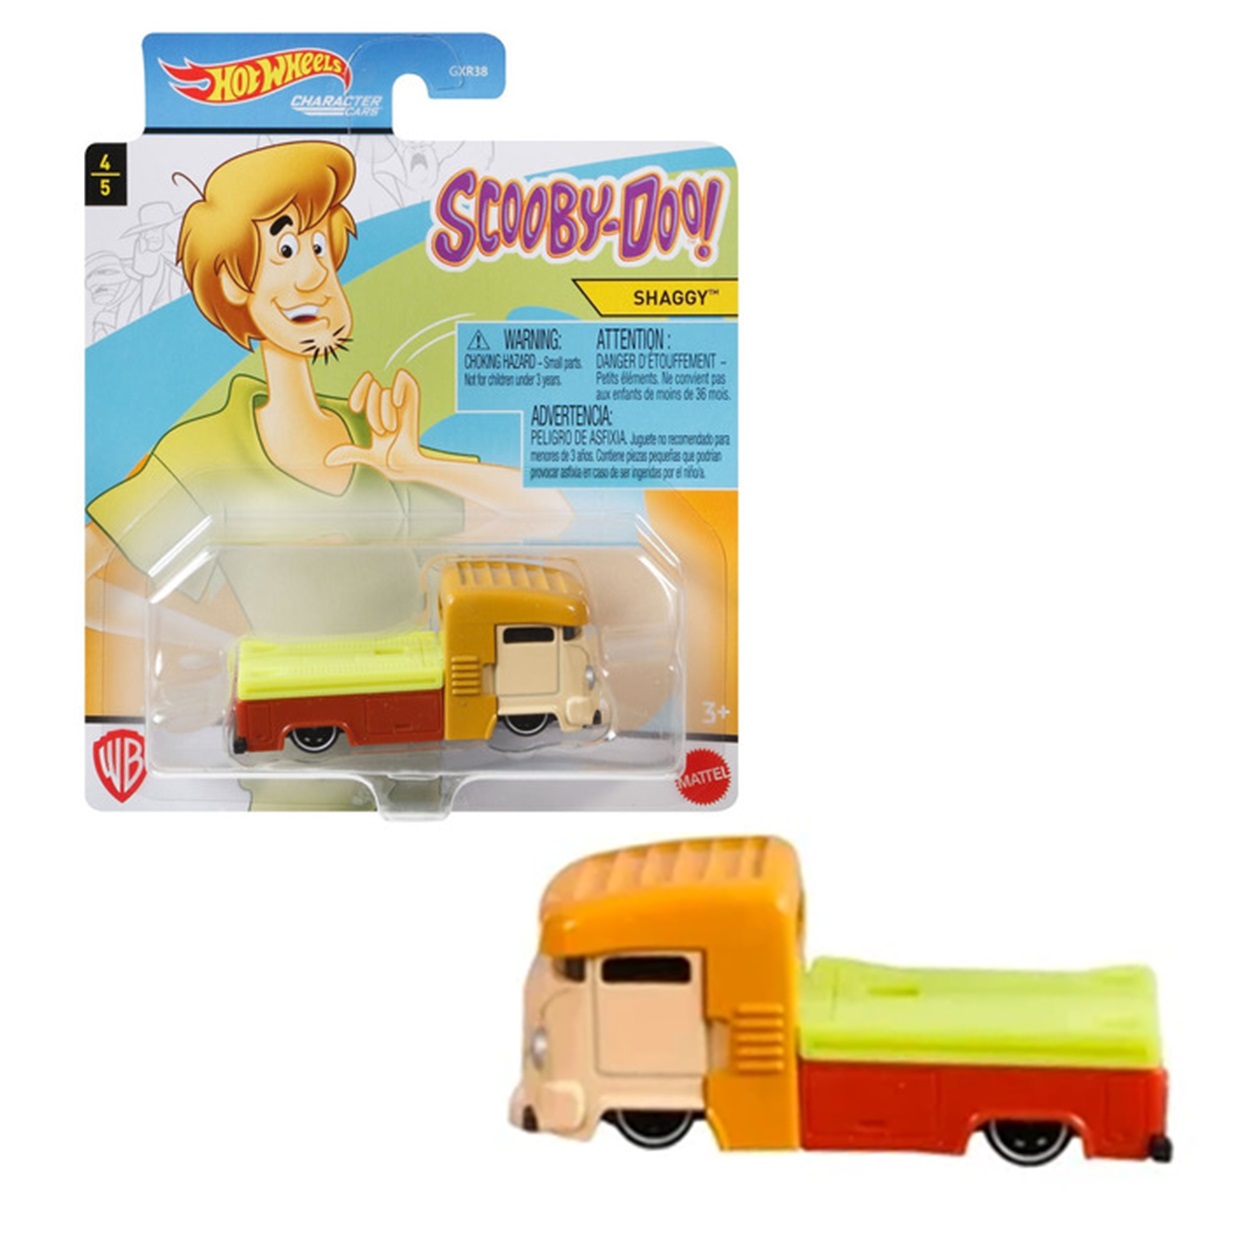 Shaggy 4/5 Hot Wheels Scooby Doo! Character Cars